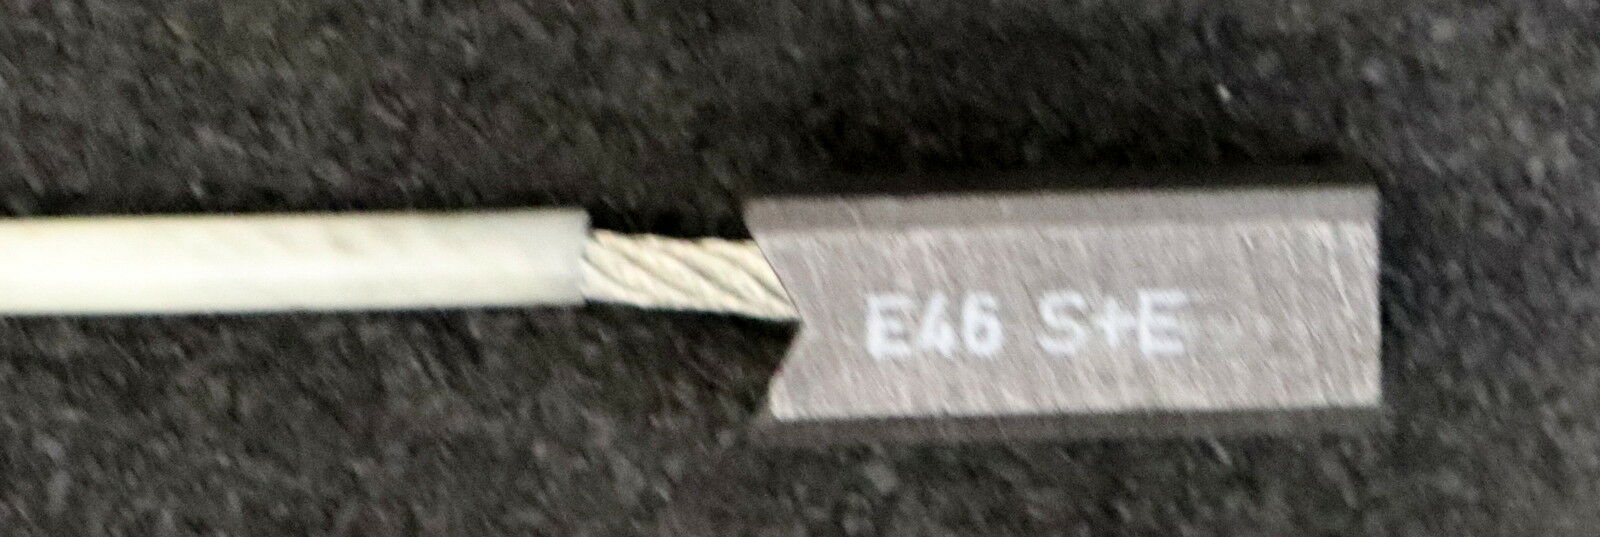 Kohlebürste E46 S+E Abmessungen 32x20x12,4mm mit Anschlussklemme 7334 1965614.0